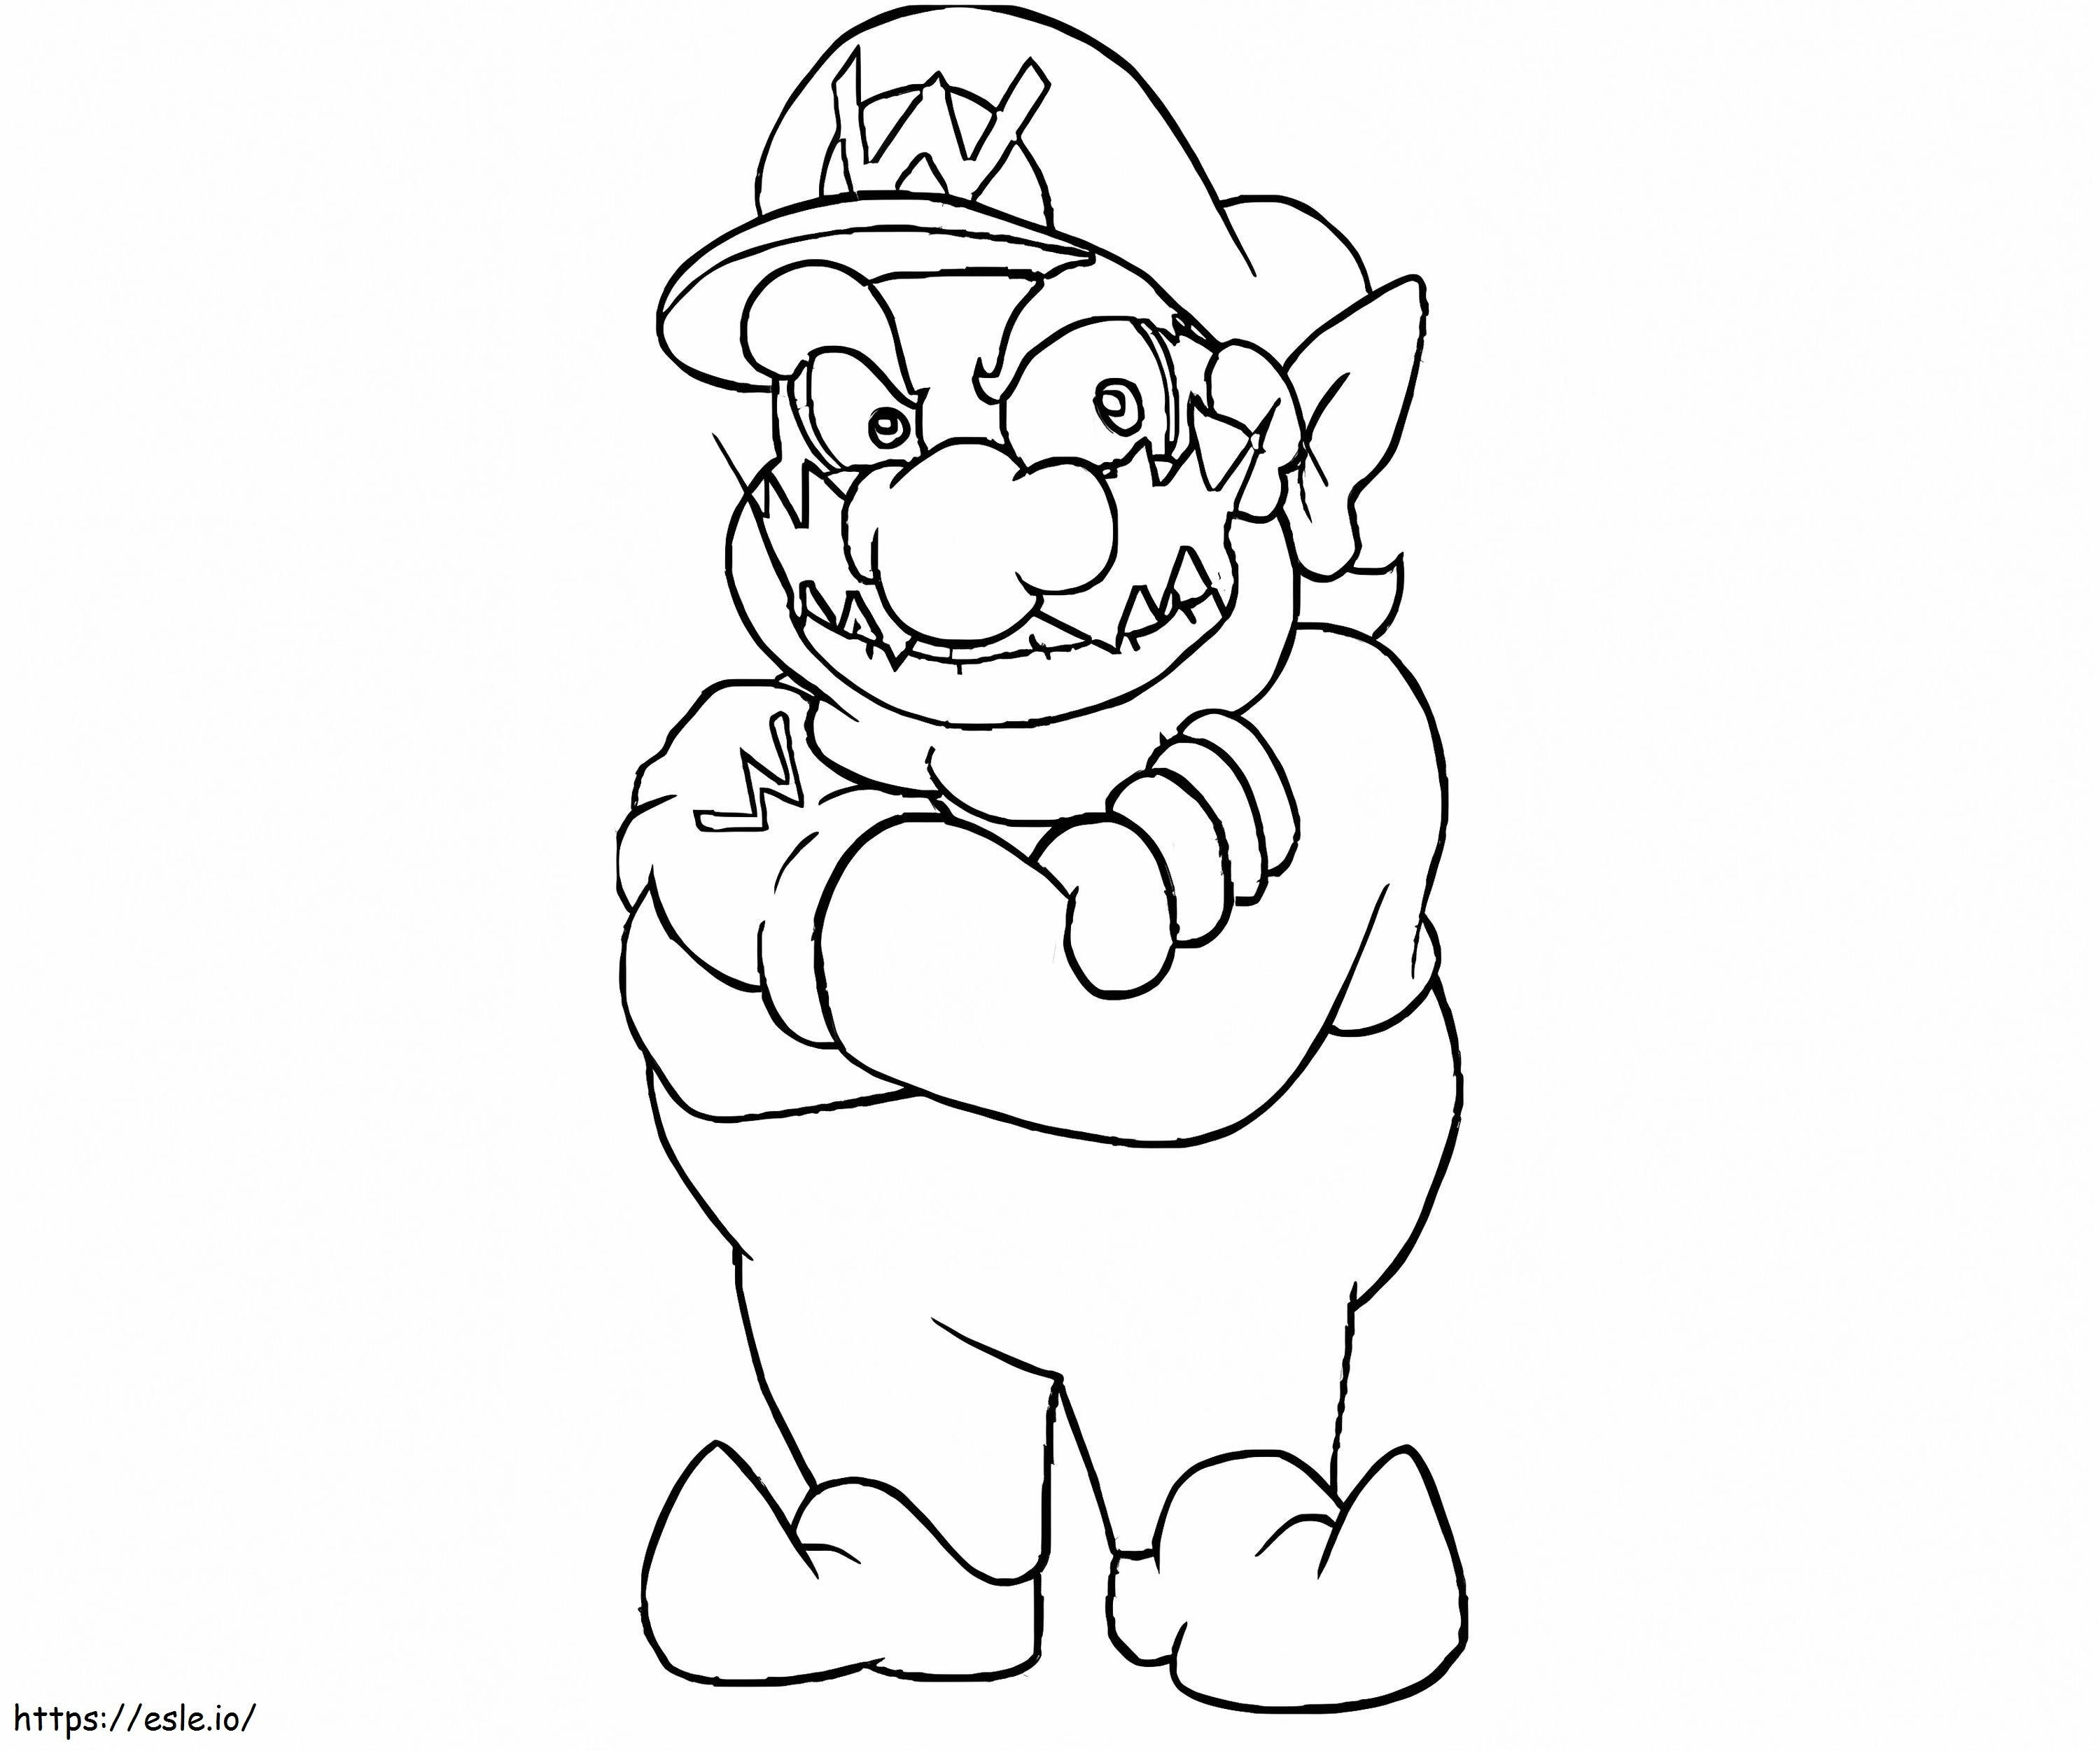 Coloriage Wario de Super Mario 4 à imprimer dessin